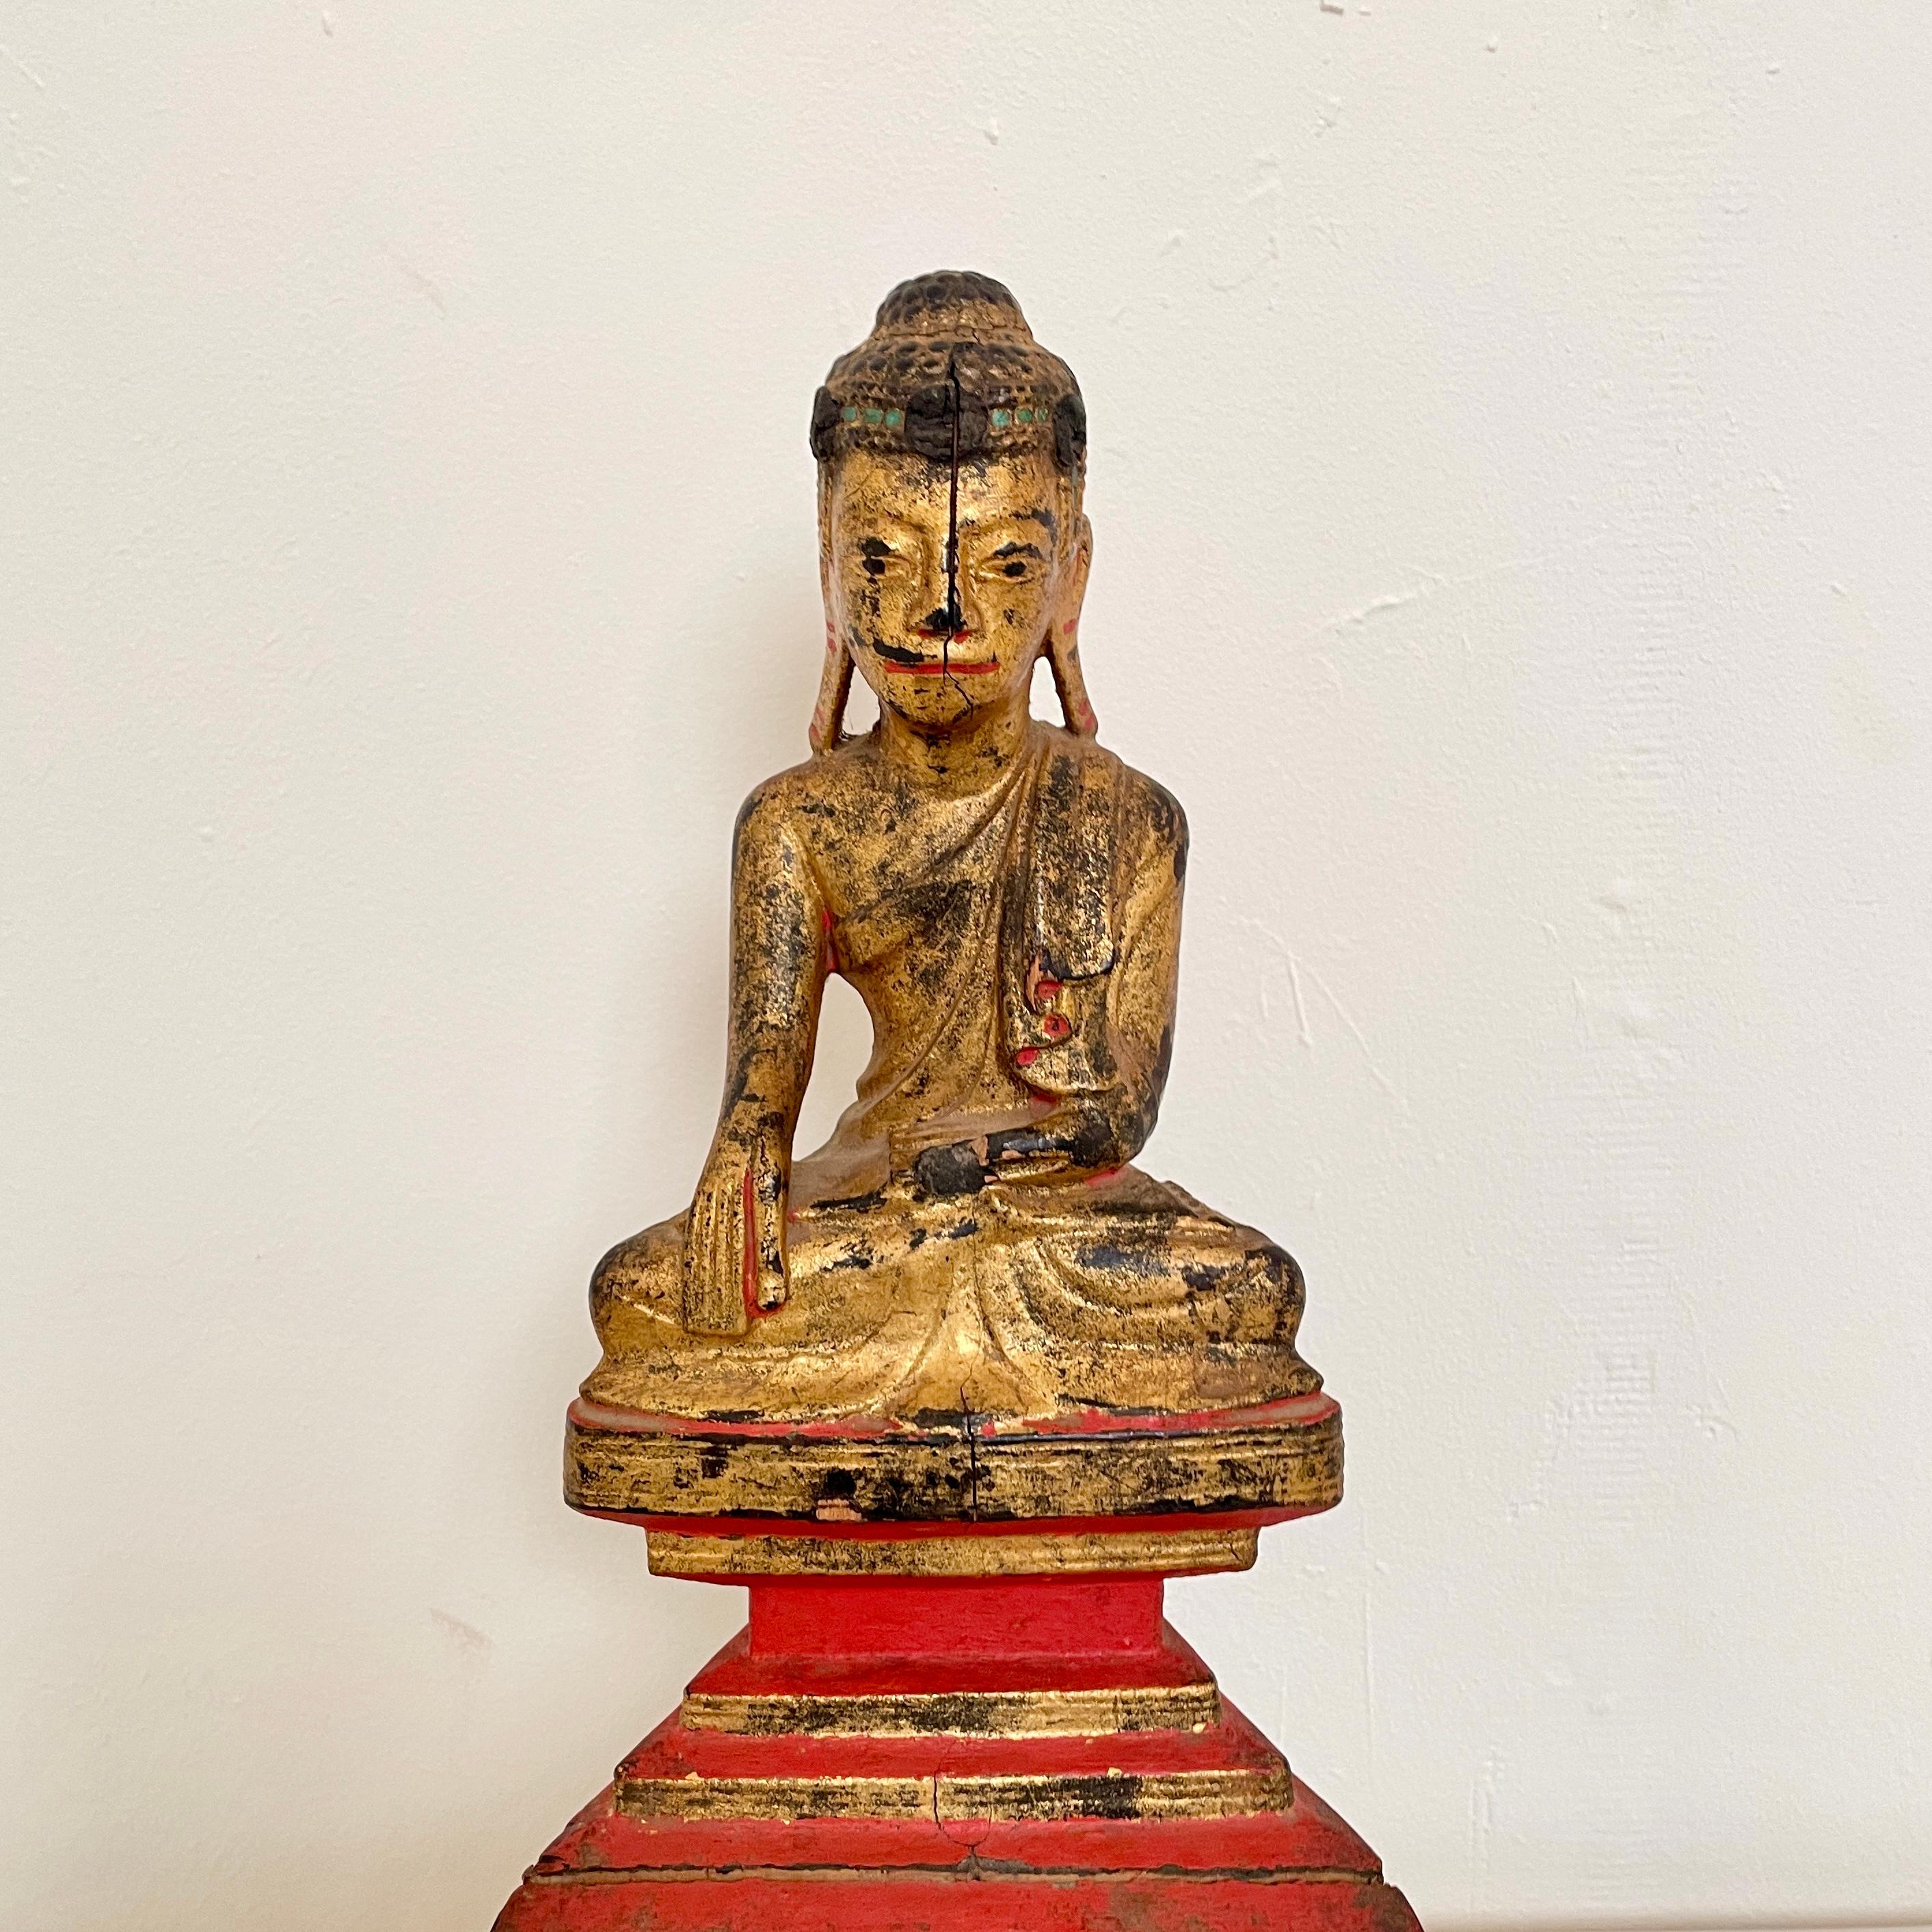 Der sitzende Mandalay-Buddha aus Burma aus dem 19. Jahrhundert wurde um 1890 gefertigt und ist eine exquisite Verkörperung spiritueller Hingabe und künstlerischer Finesse. Dieses aus vergoldetem Holz geschnitzte und mit aufwändigen Lackdetails